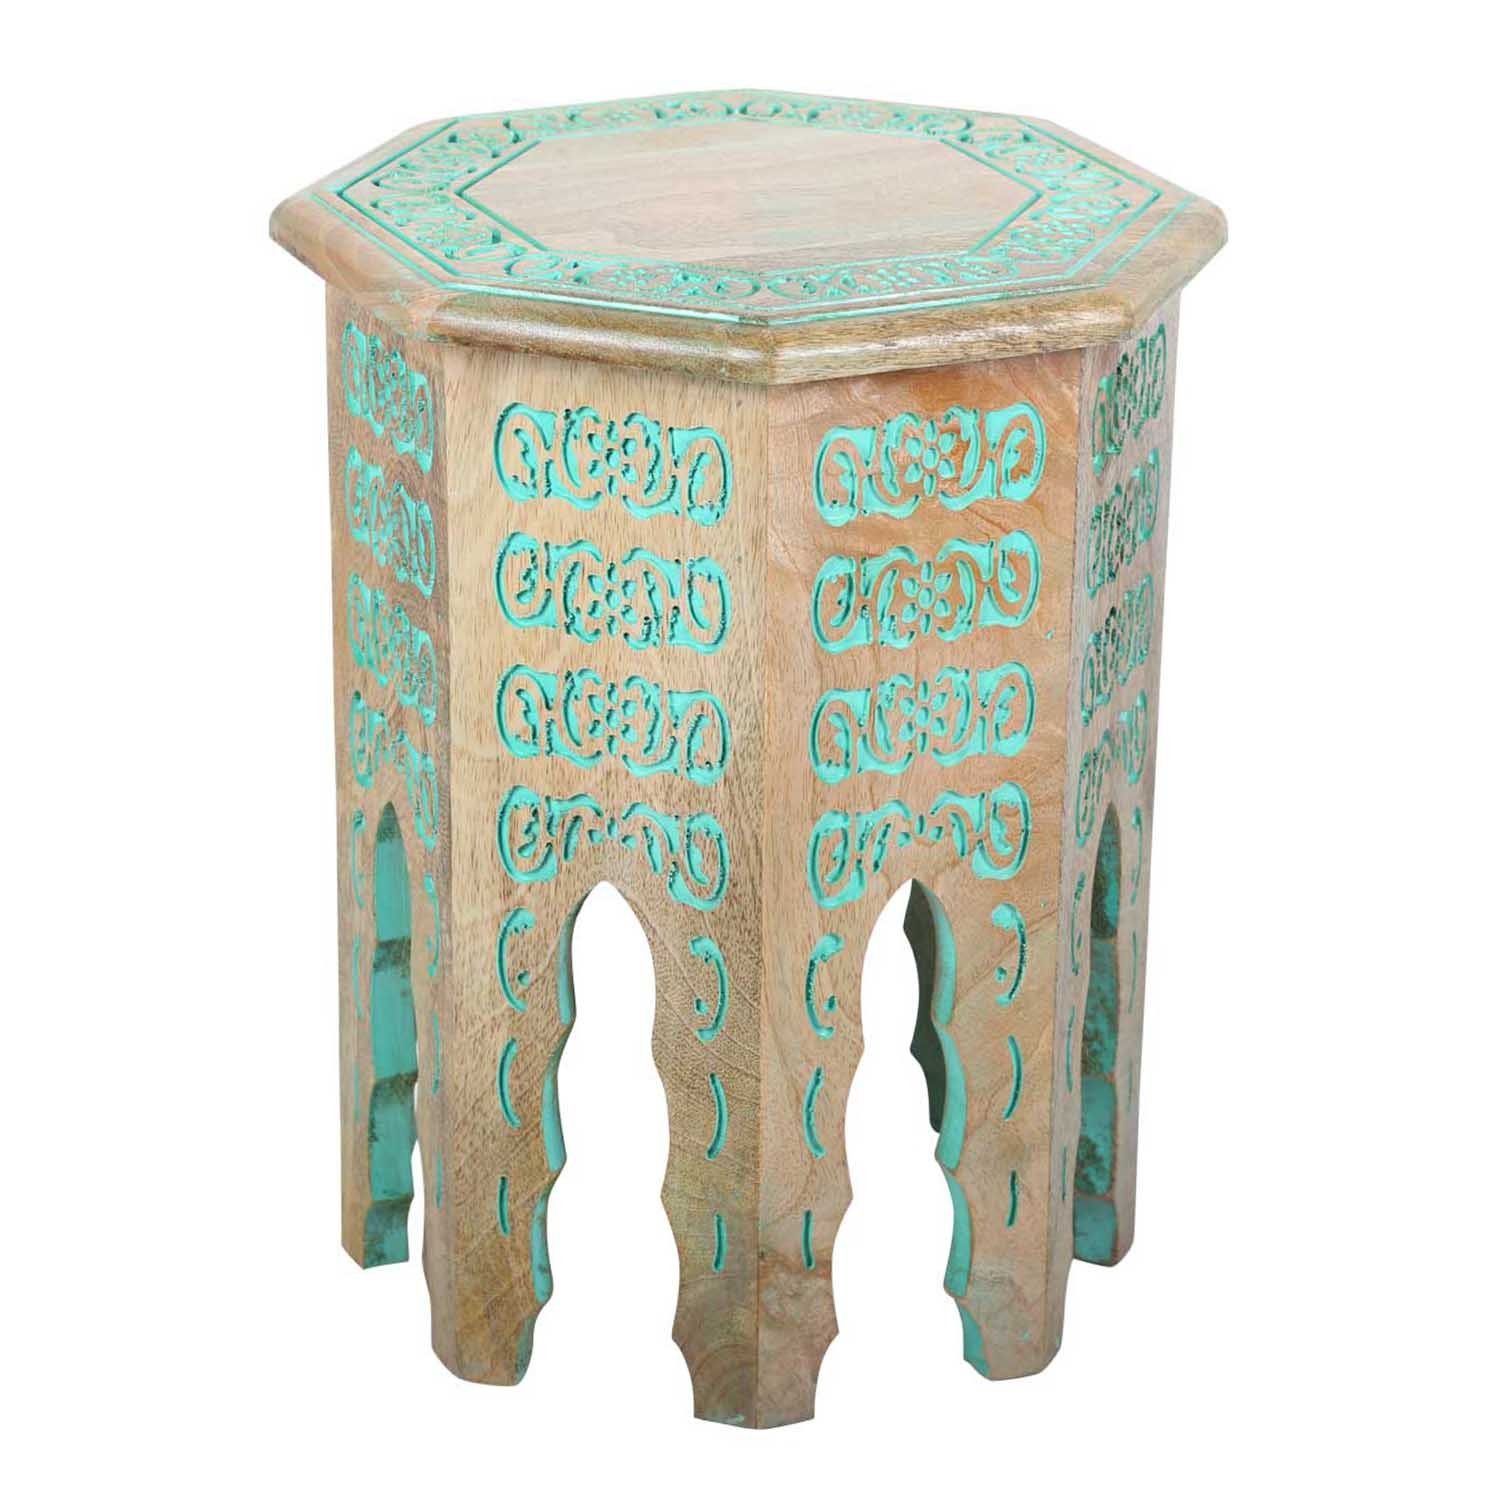 Casa Moro Beistelltisch Orientalischer Beistelltisch Houda Türkis  Massivholz Tisch, Kunsthandwerk mit Ornamenten verziert